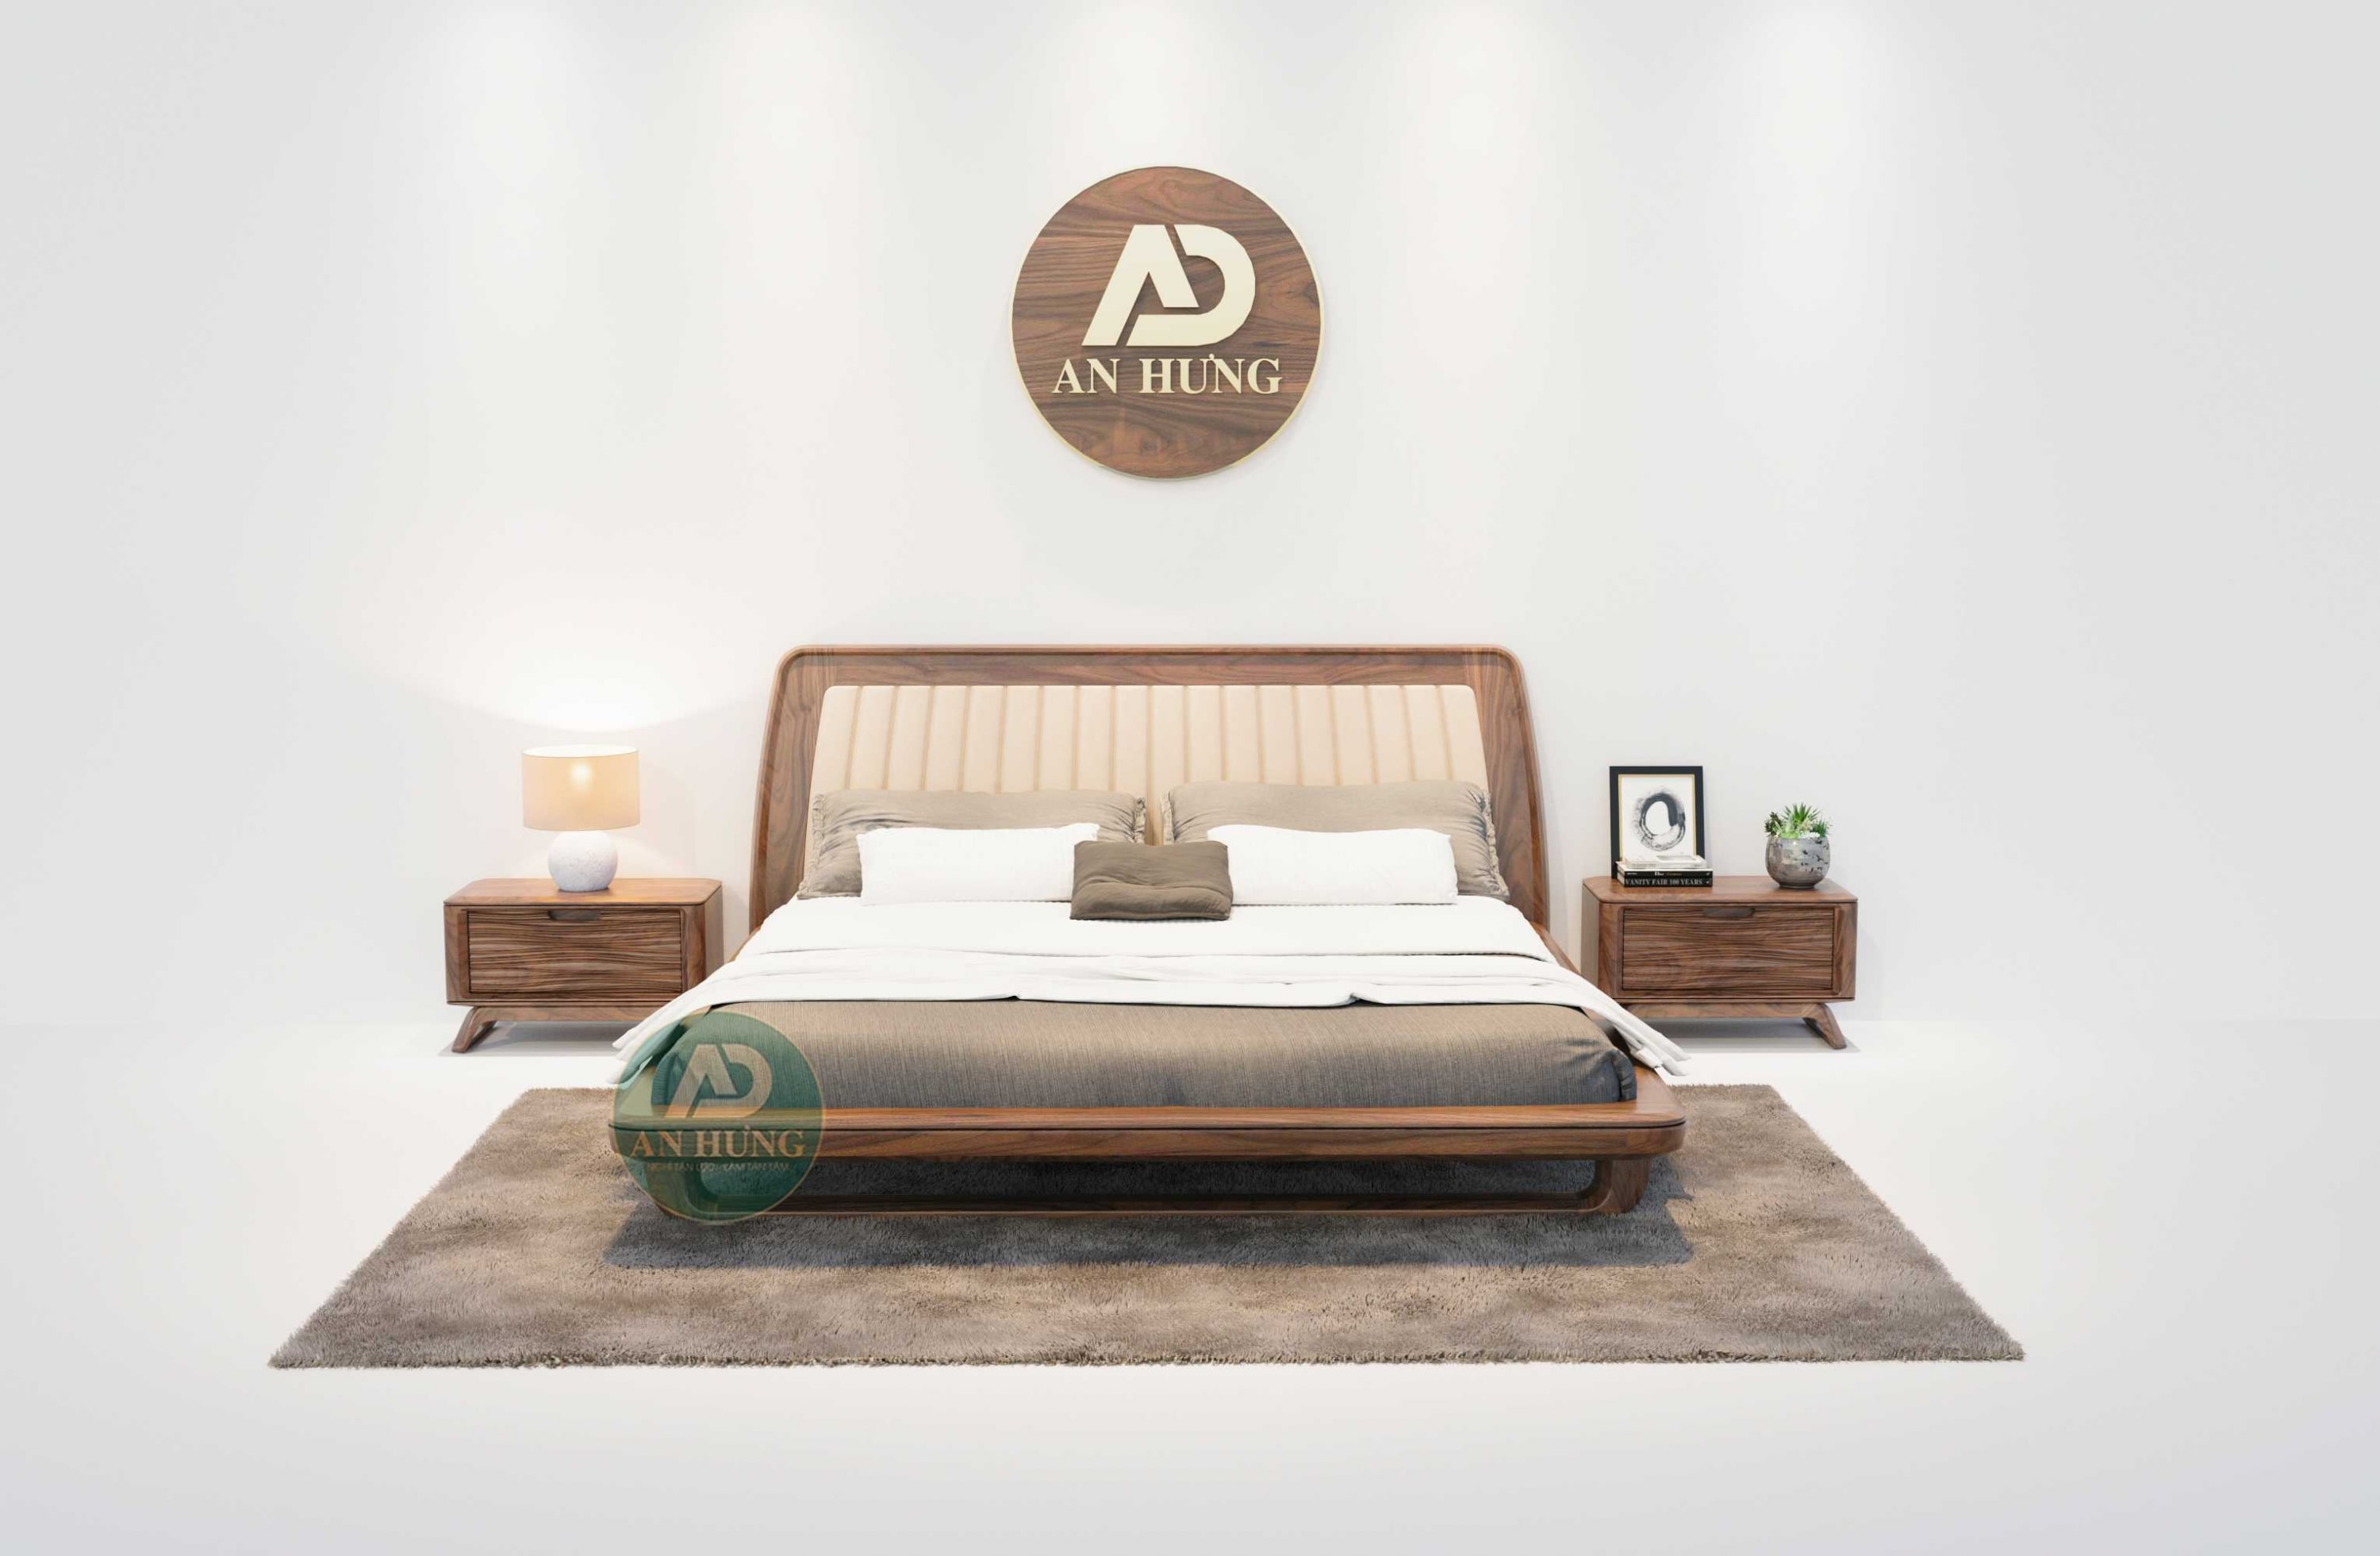 Thiết kế giường gỗ óc chó trẻ trung, hiện đại